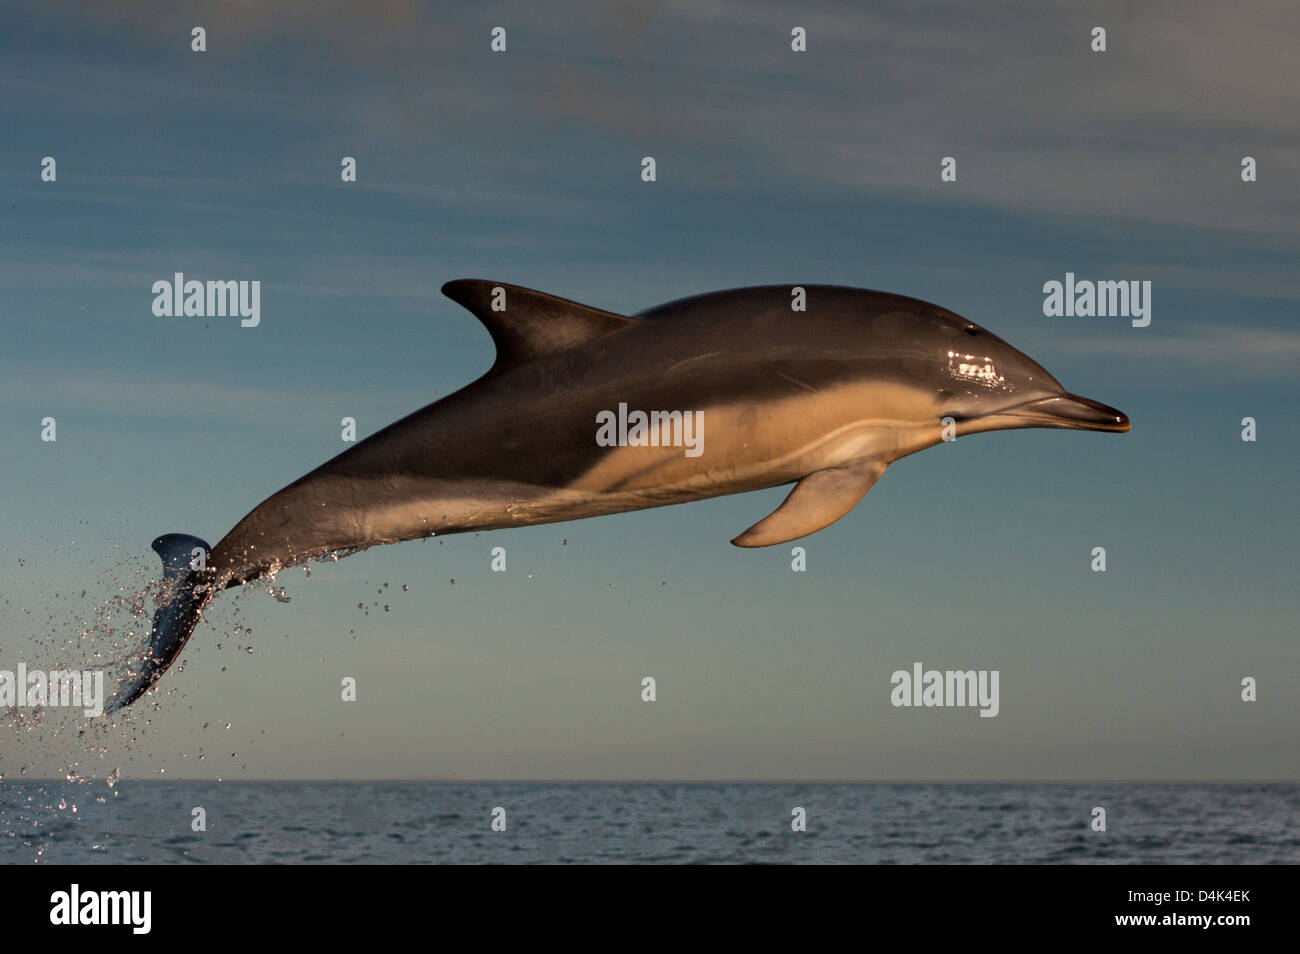 Delphin springen über Wasser Stockfoto